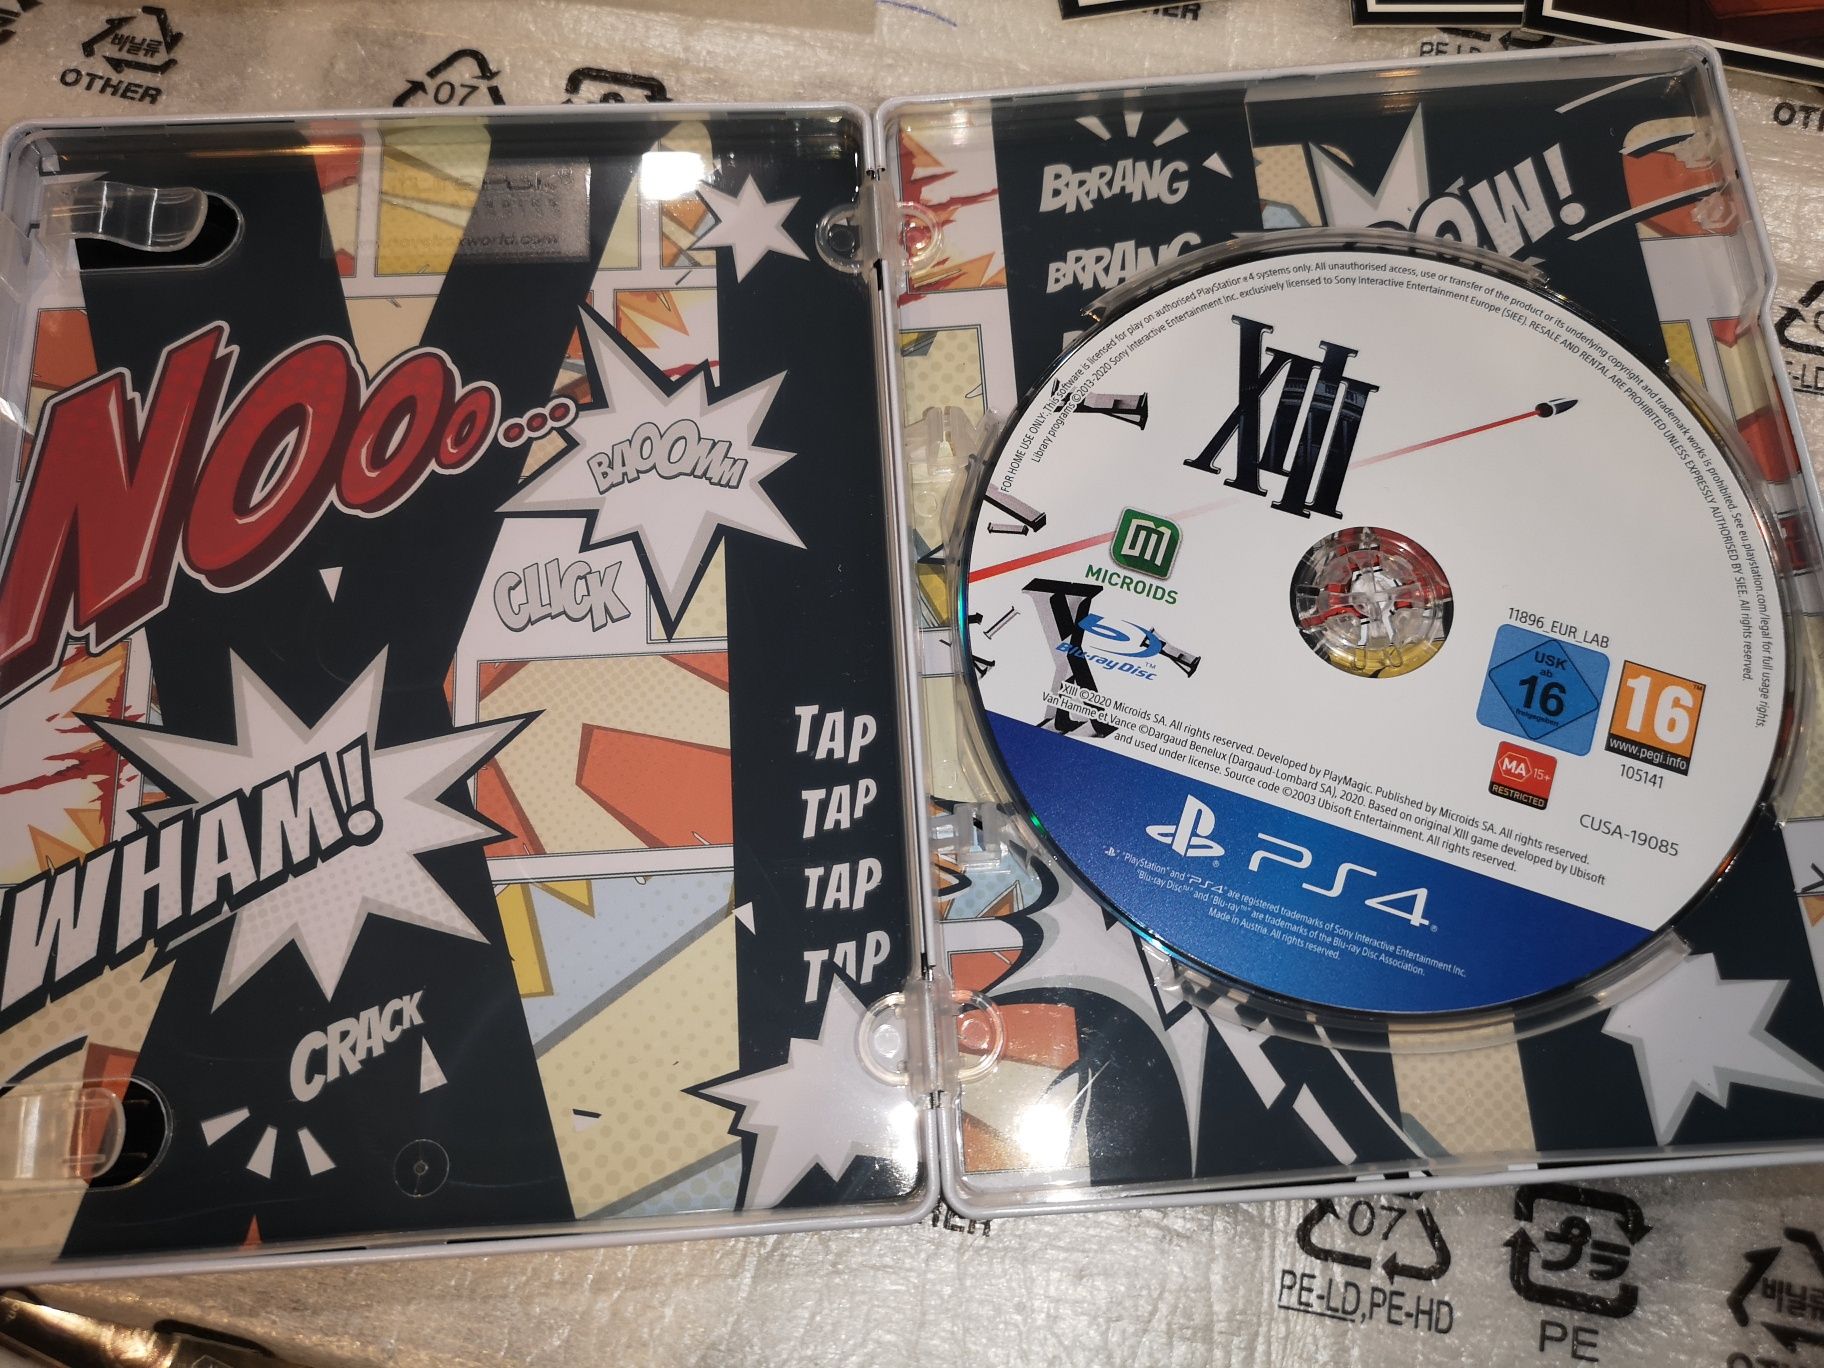 XIII PS4 gra + STEELBOOK jak nowa (możliwość wymiany) kioskzgrami